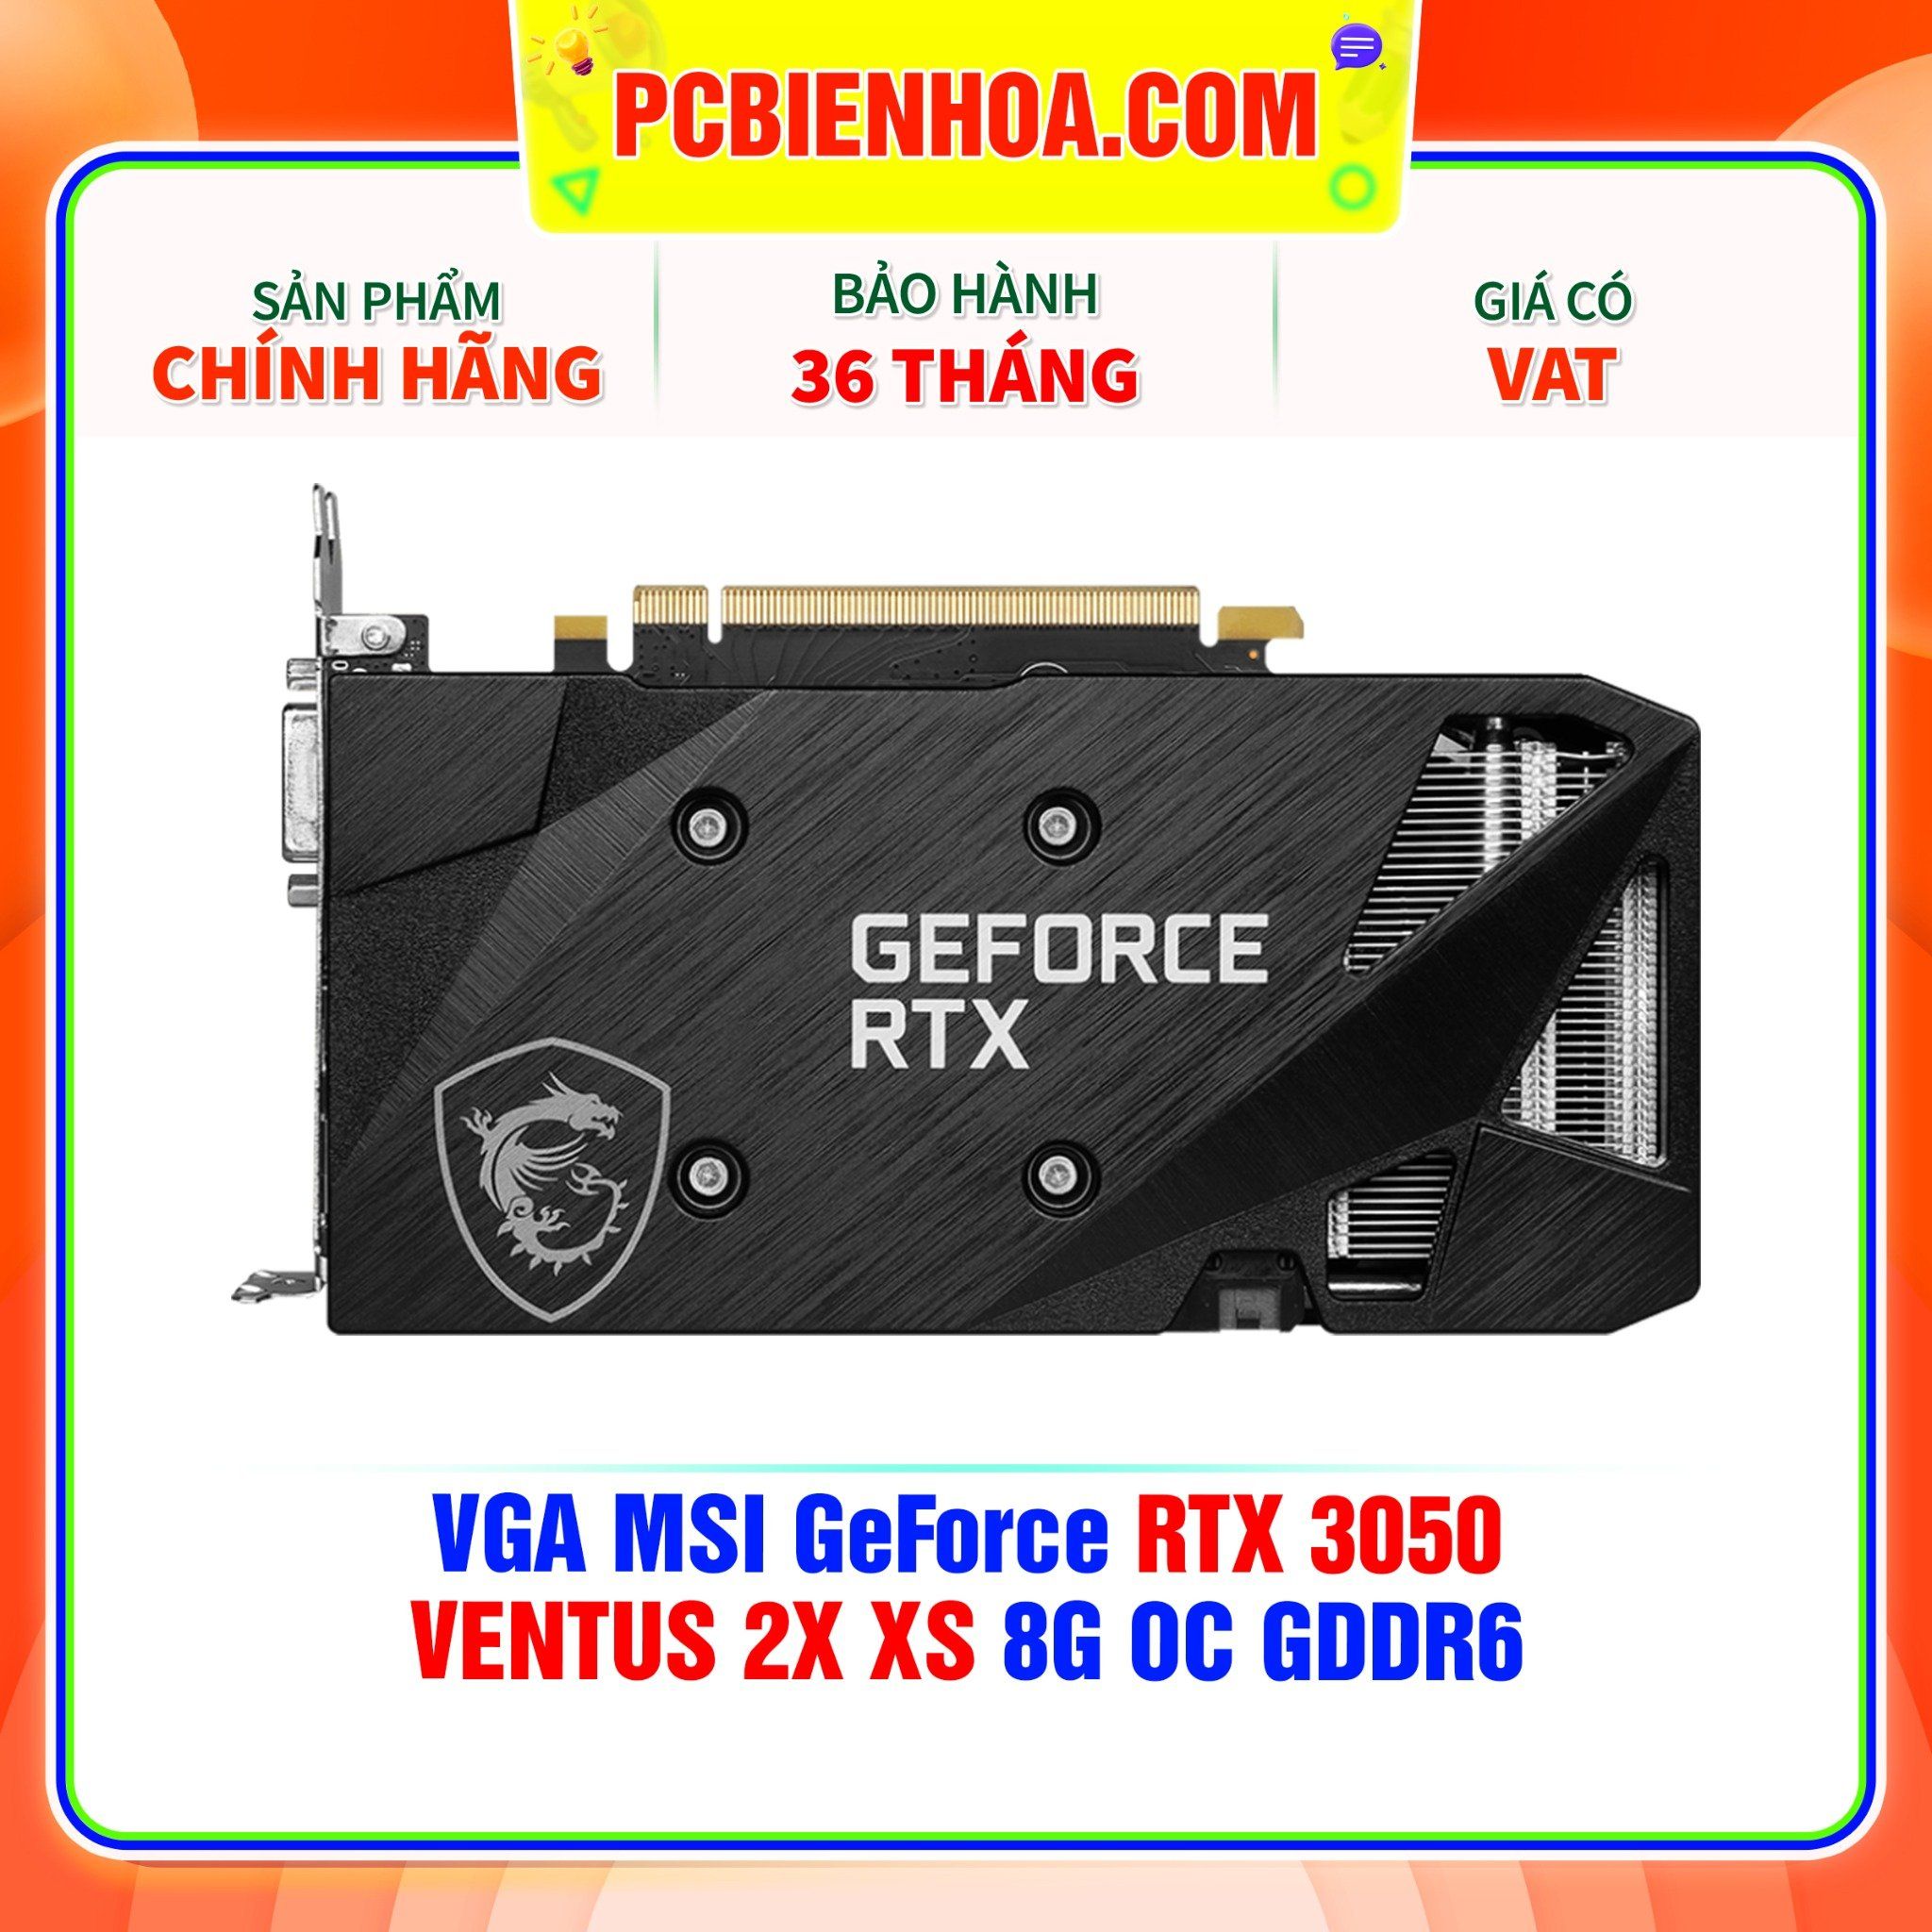  VGA MSI GeForce RTX 3050 VENTUS 2X XS 8G OC GDDR6 